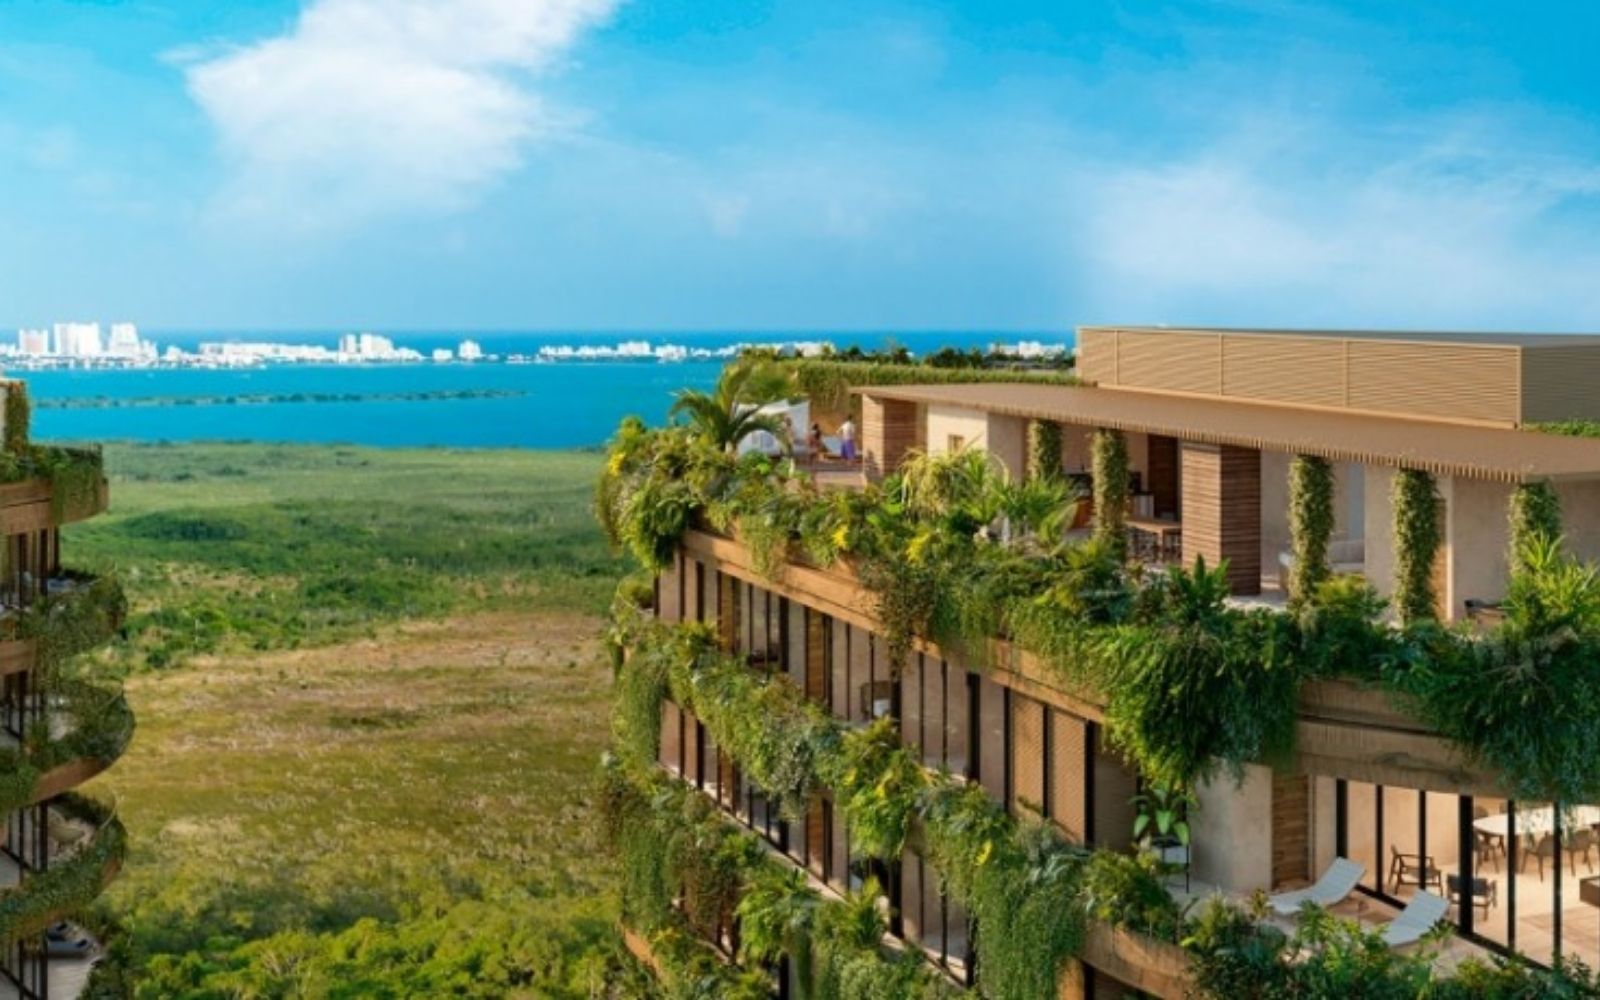 Departamento en edificio sustentable con vista al mar, campo de golf y reserva natural. Totalmente equipado y con amenidades, alberca